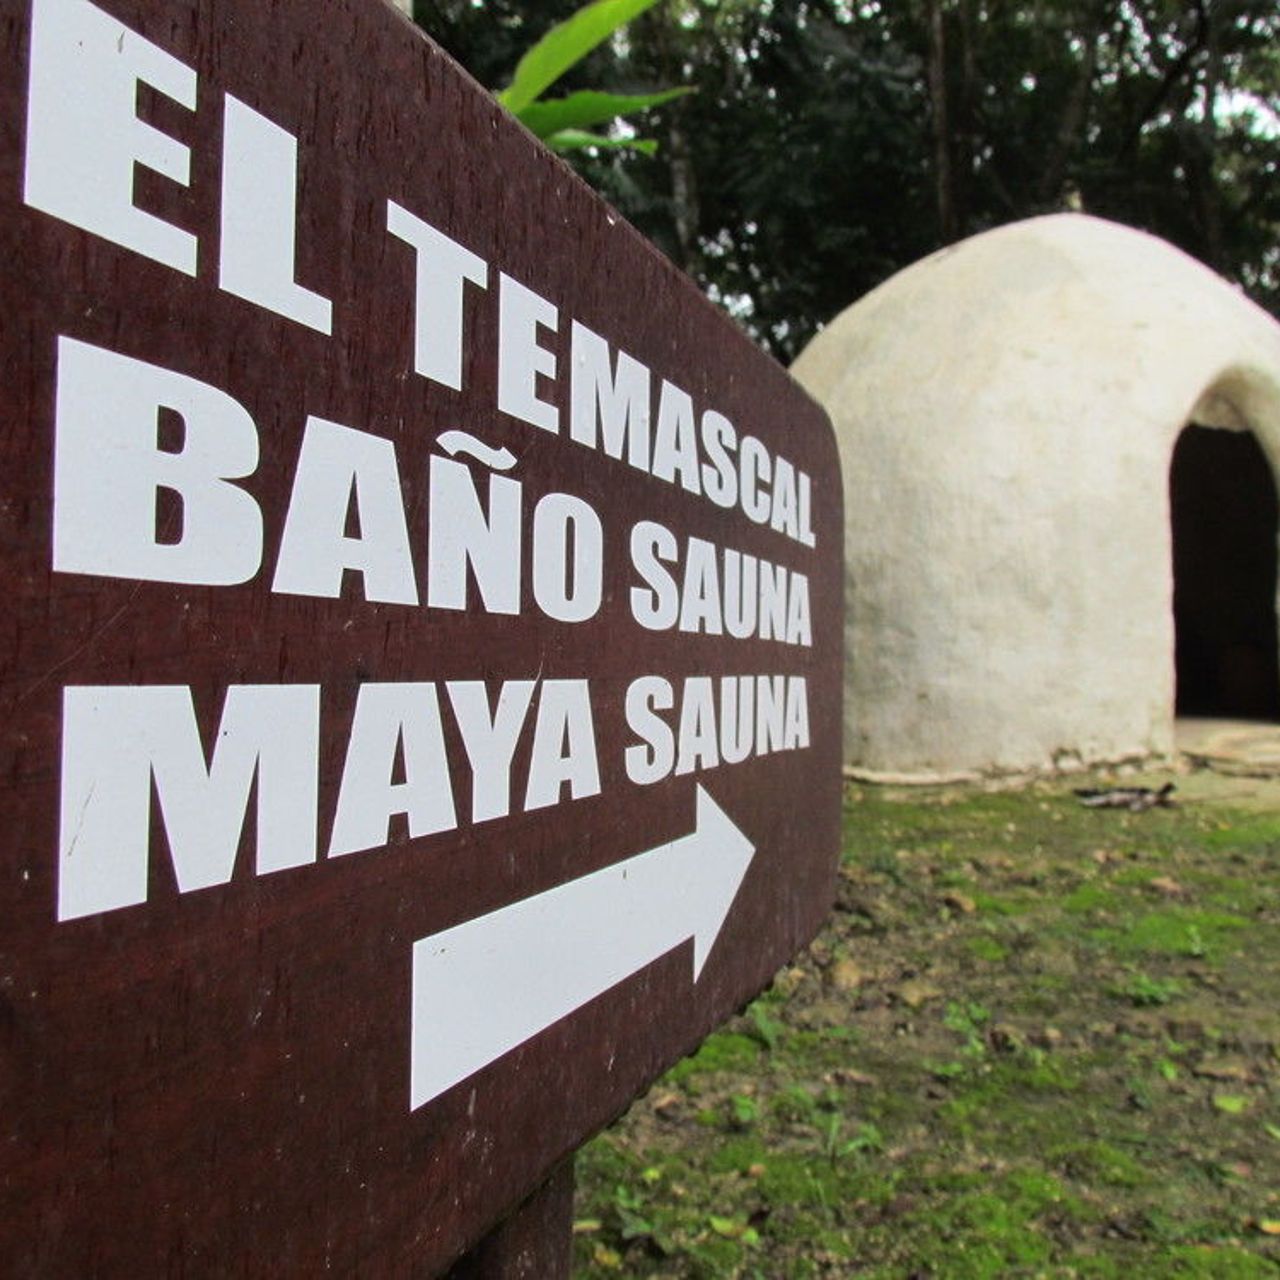 Hotel Camino Real Tikal - San Jose presso HRS con servizi gratuiti